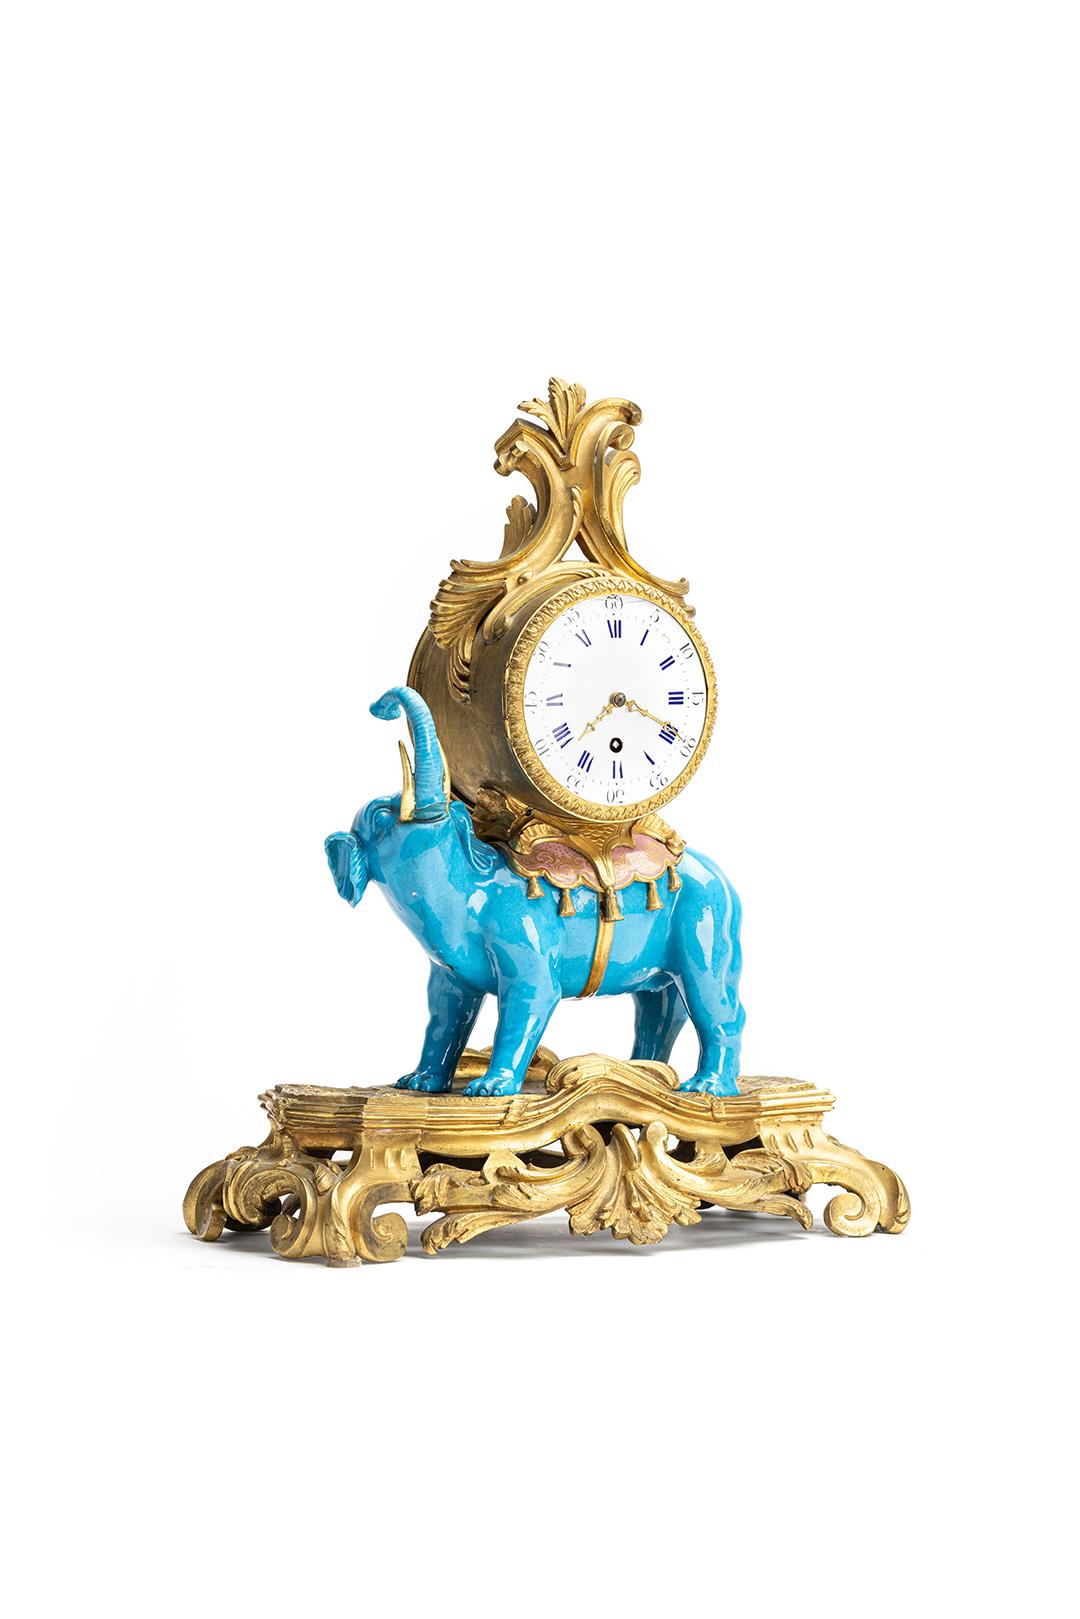 Es handelt sich um eine seriöse, wahrscheinlich von Ludwig XV. inspirierte, unberührte englische Kaminsimsuhr aus dem 19. Jahrhundert in Form eines Elefanten, die um 1870 entstand. Der schöne blaue Porzellanelefant bildet einen auffälligen Kontrast